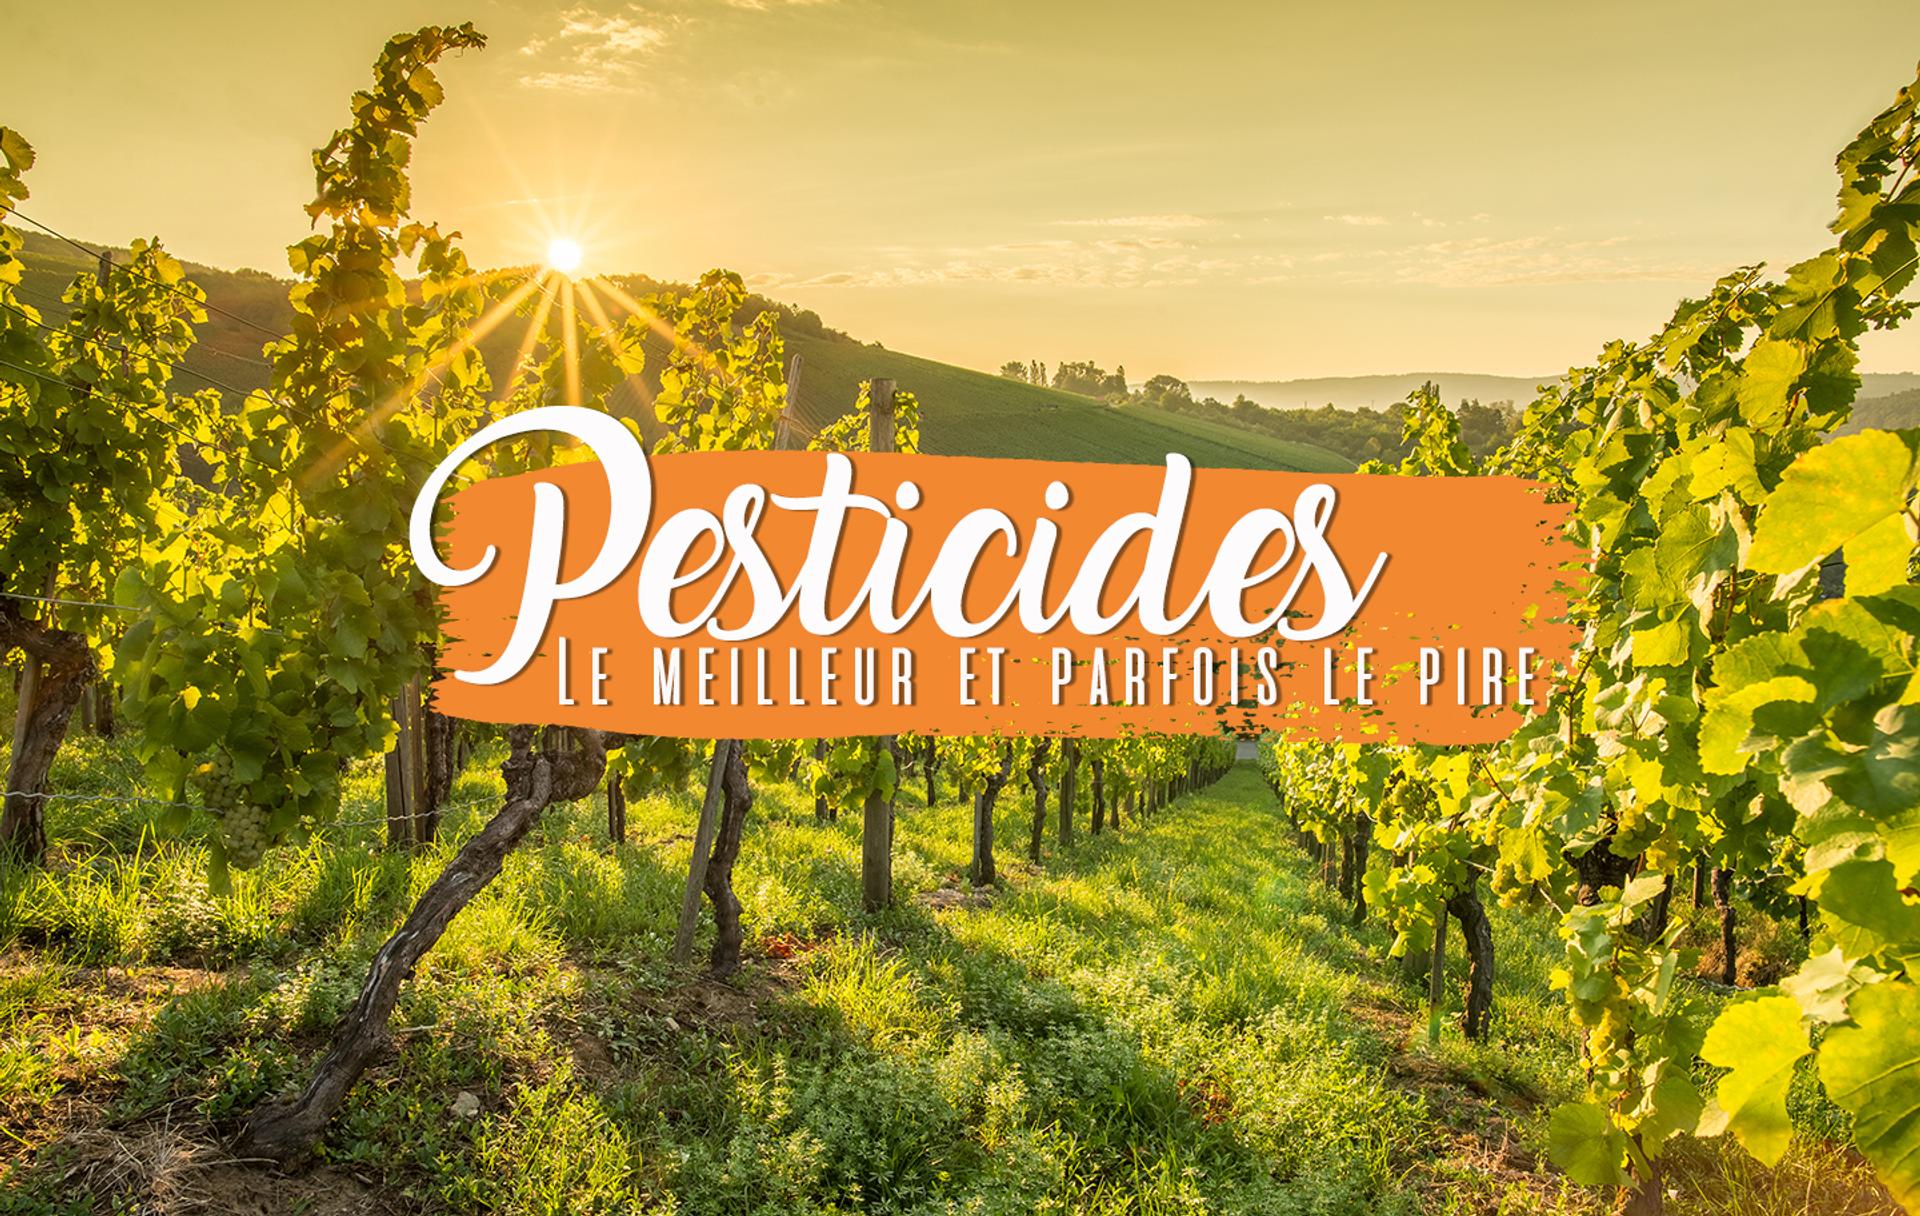 Les pesticides : le meilleur et parfois le pire